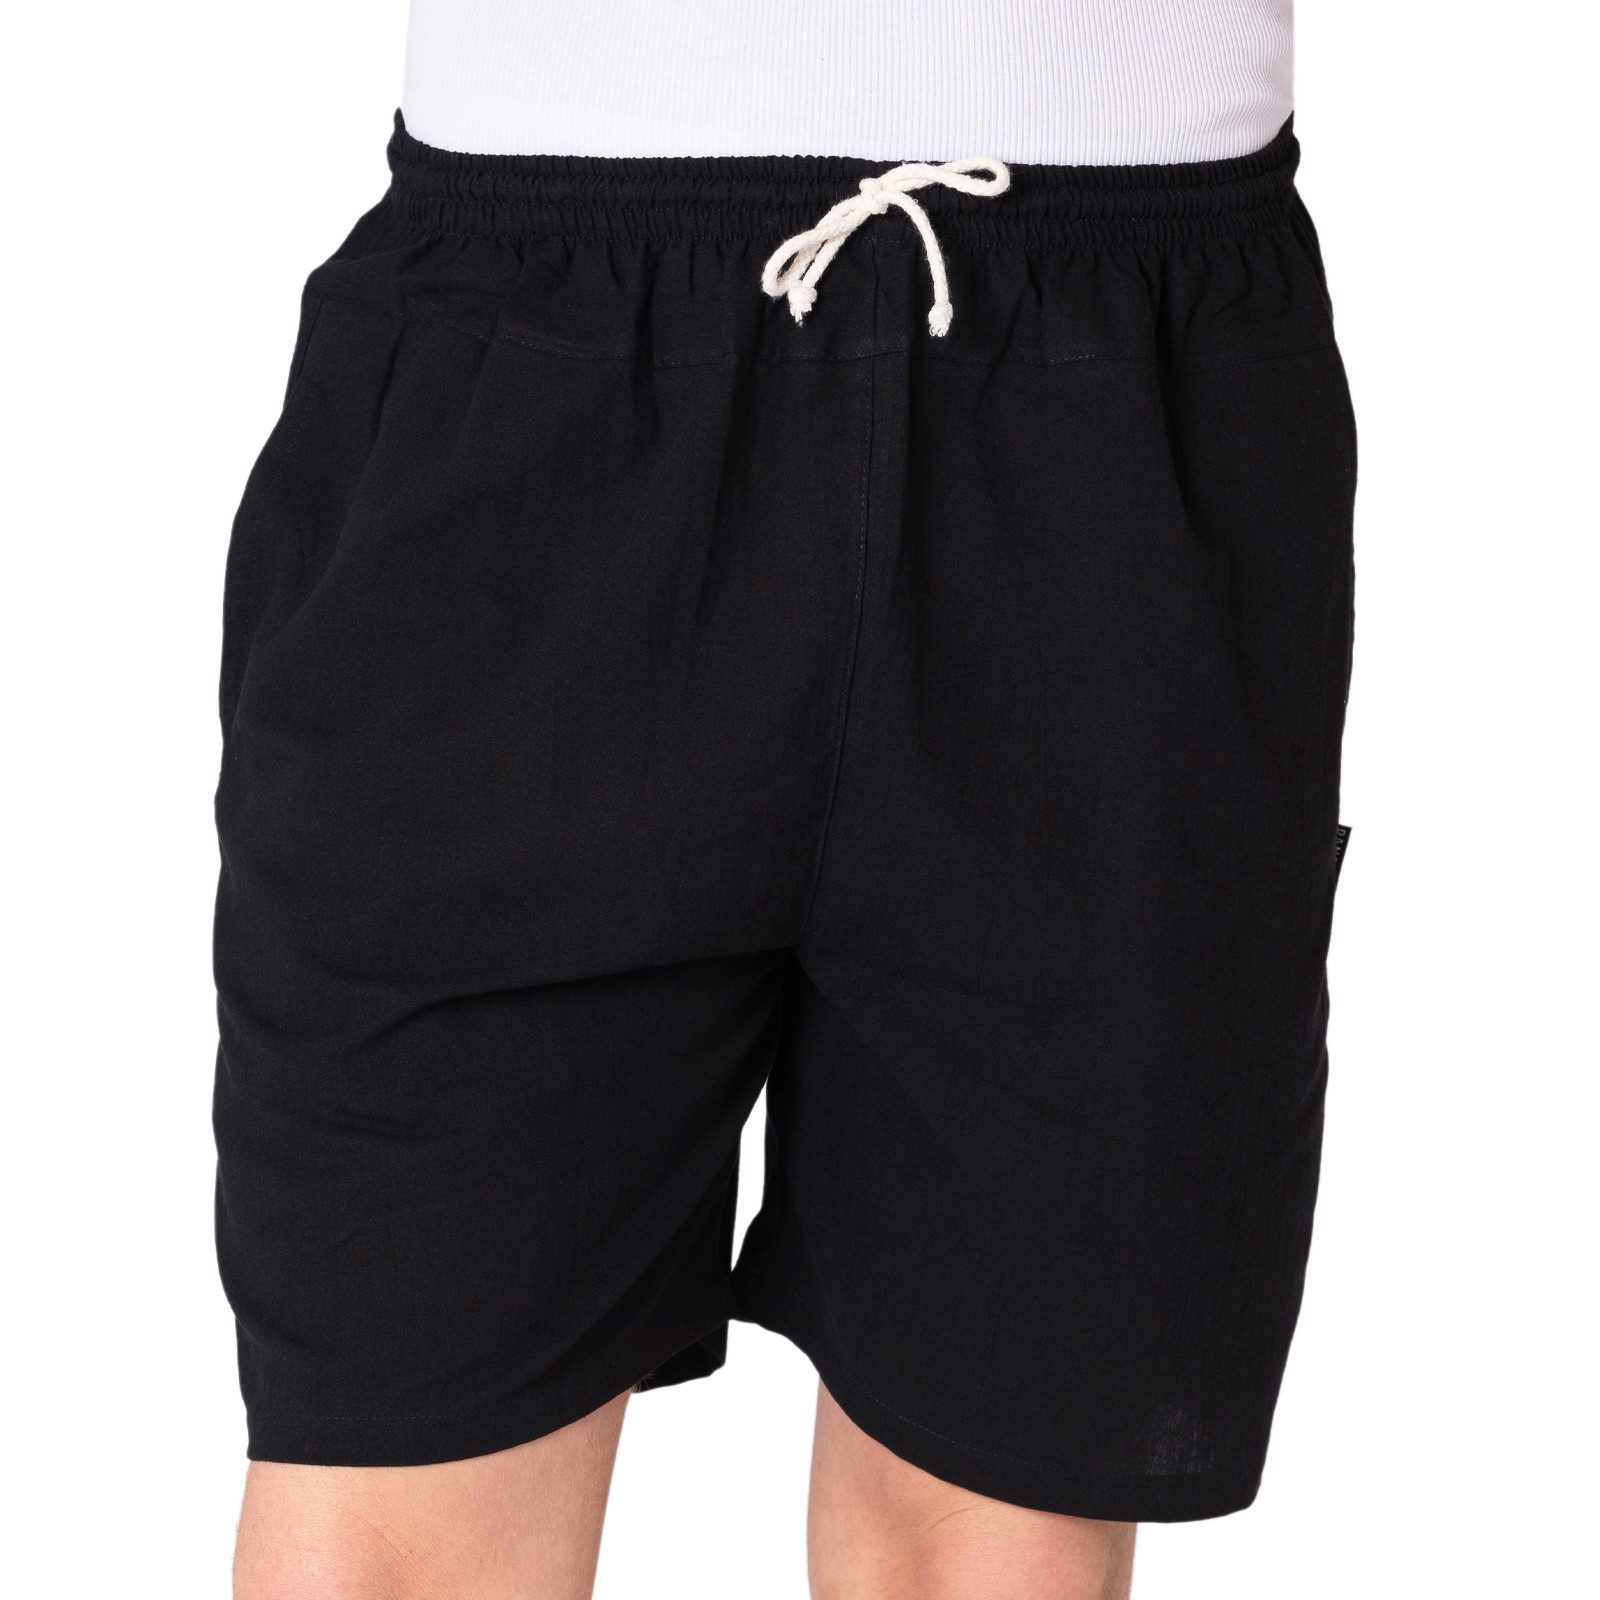 PANASIAM Strandshorts kurze Hose aus 100% Baumwolle Basic Stoffhose mit Taschen & Gummibund Sommerhose Sweatshorts Casual Loungewear Wellnesshose Strandshorts